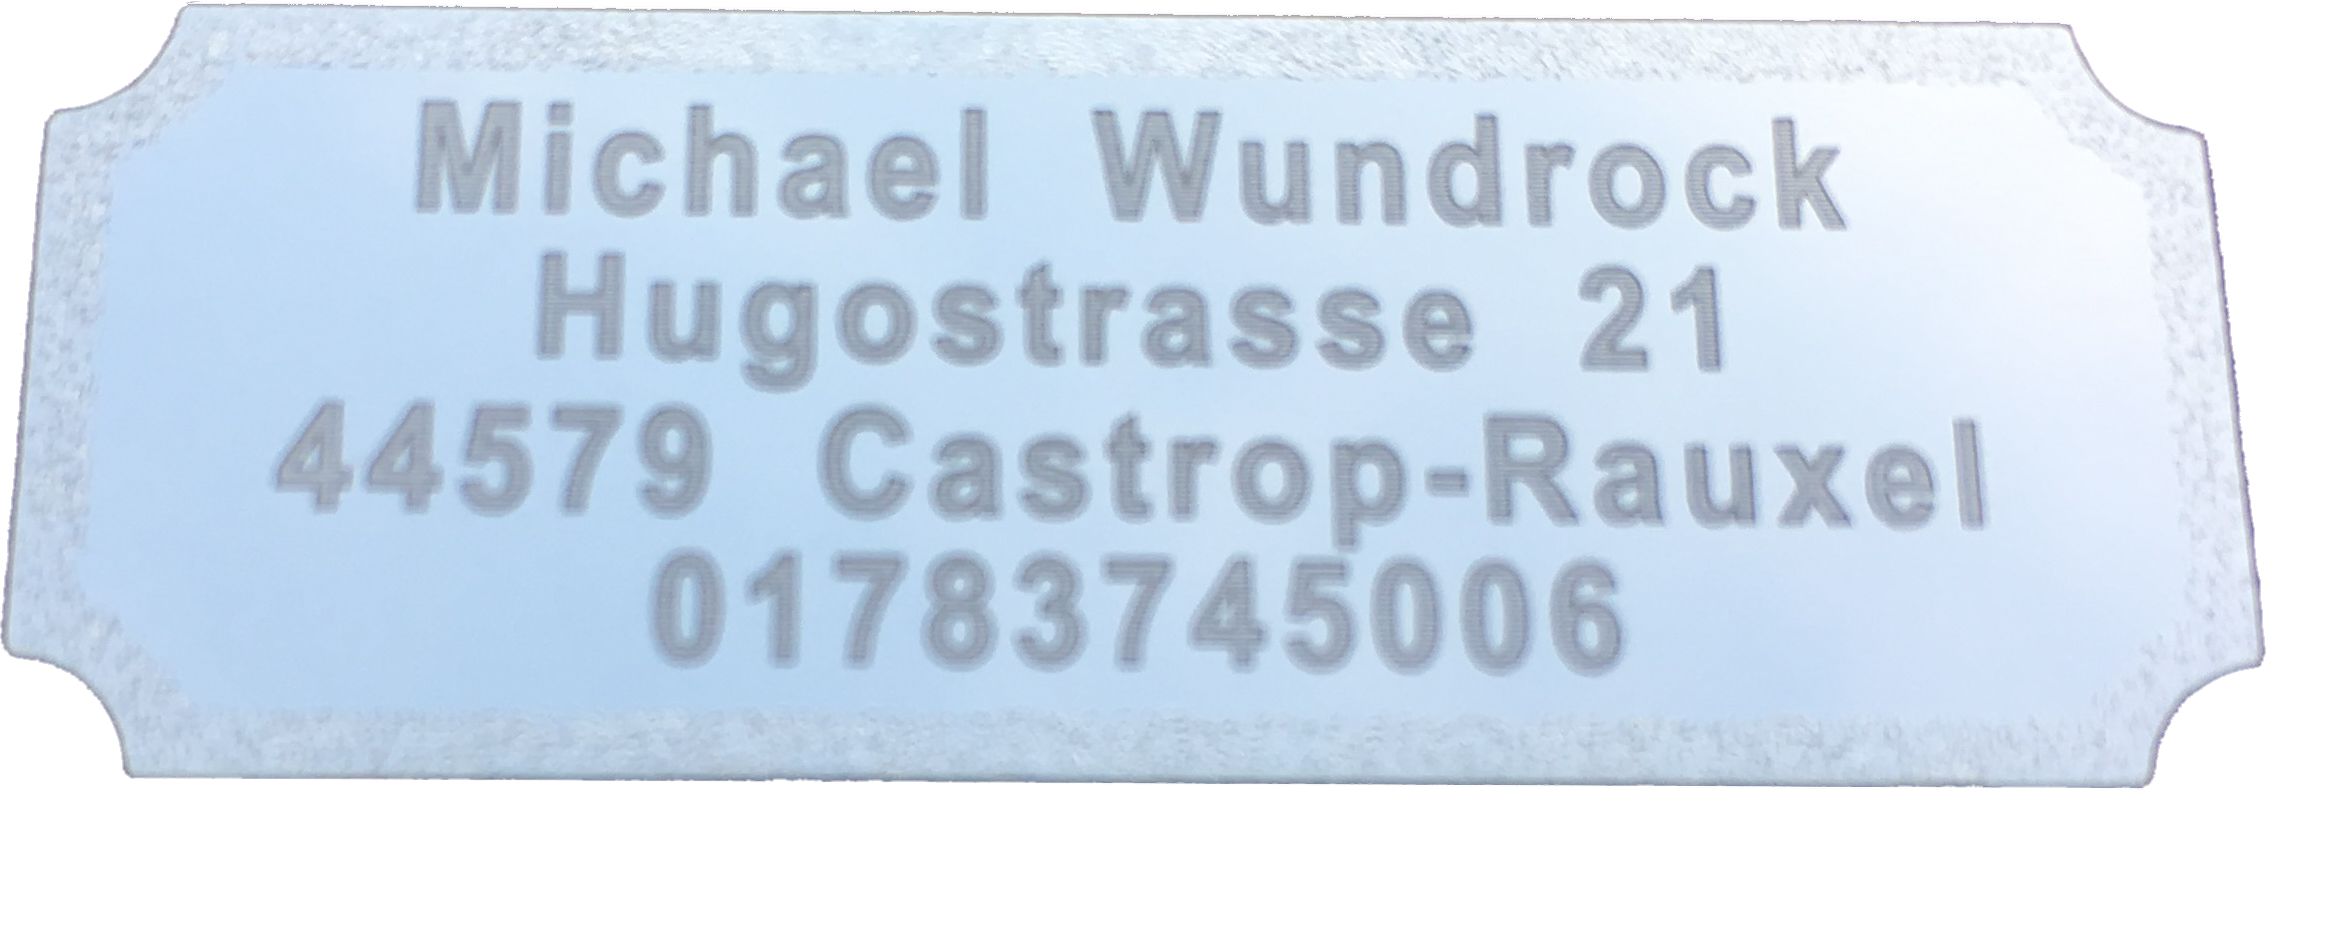 5er Pack Namensschilder Modellkennzeichnung für Flugzeugmodelle inkl. Gravur 50 x 17 mm